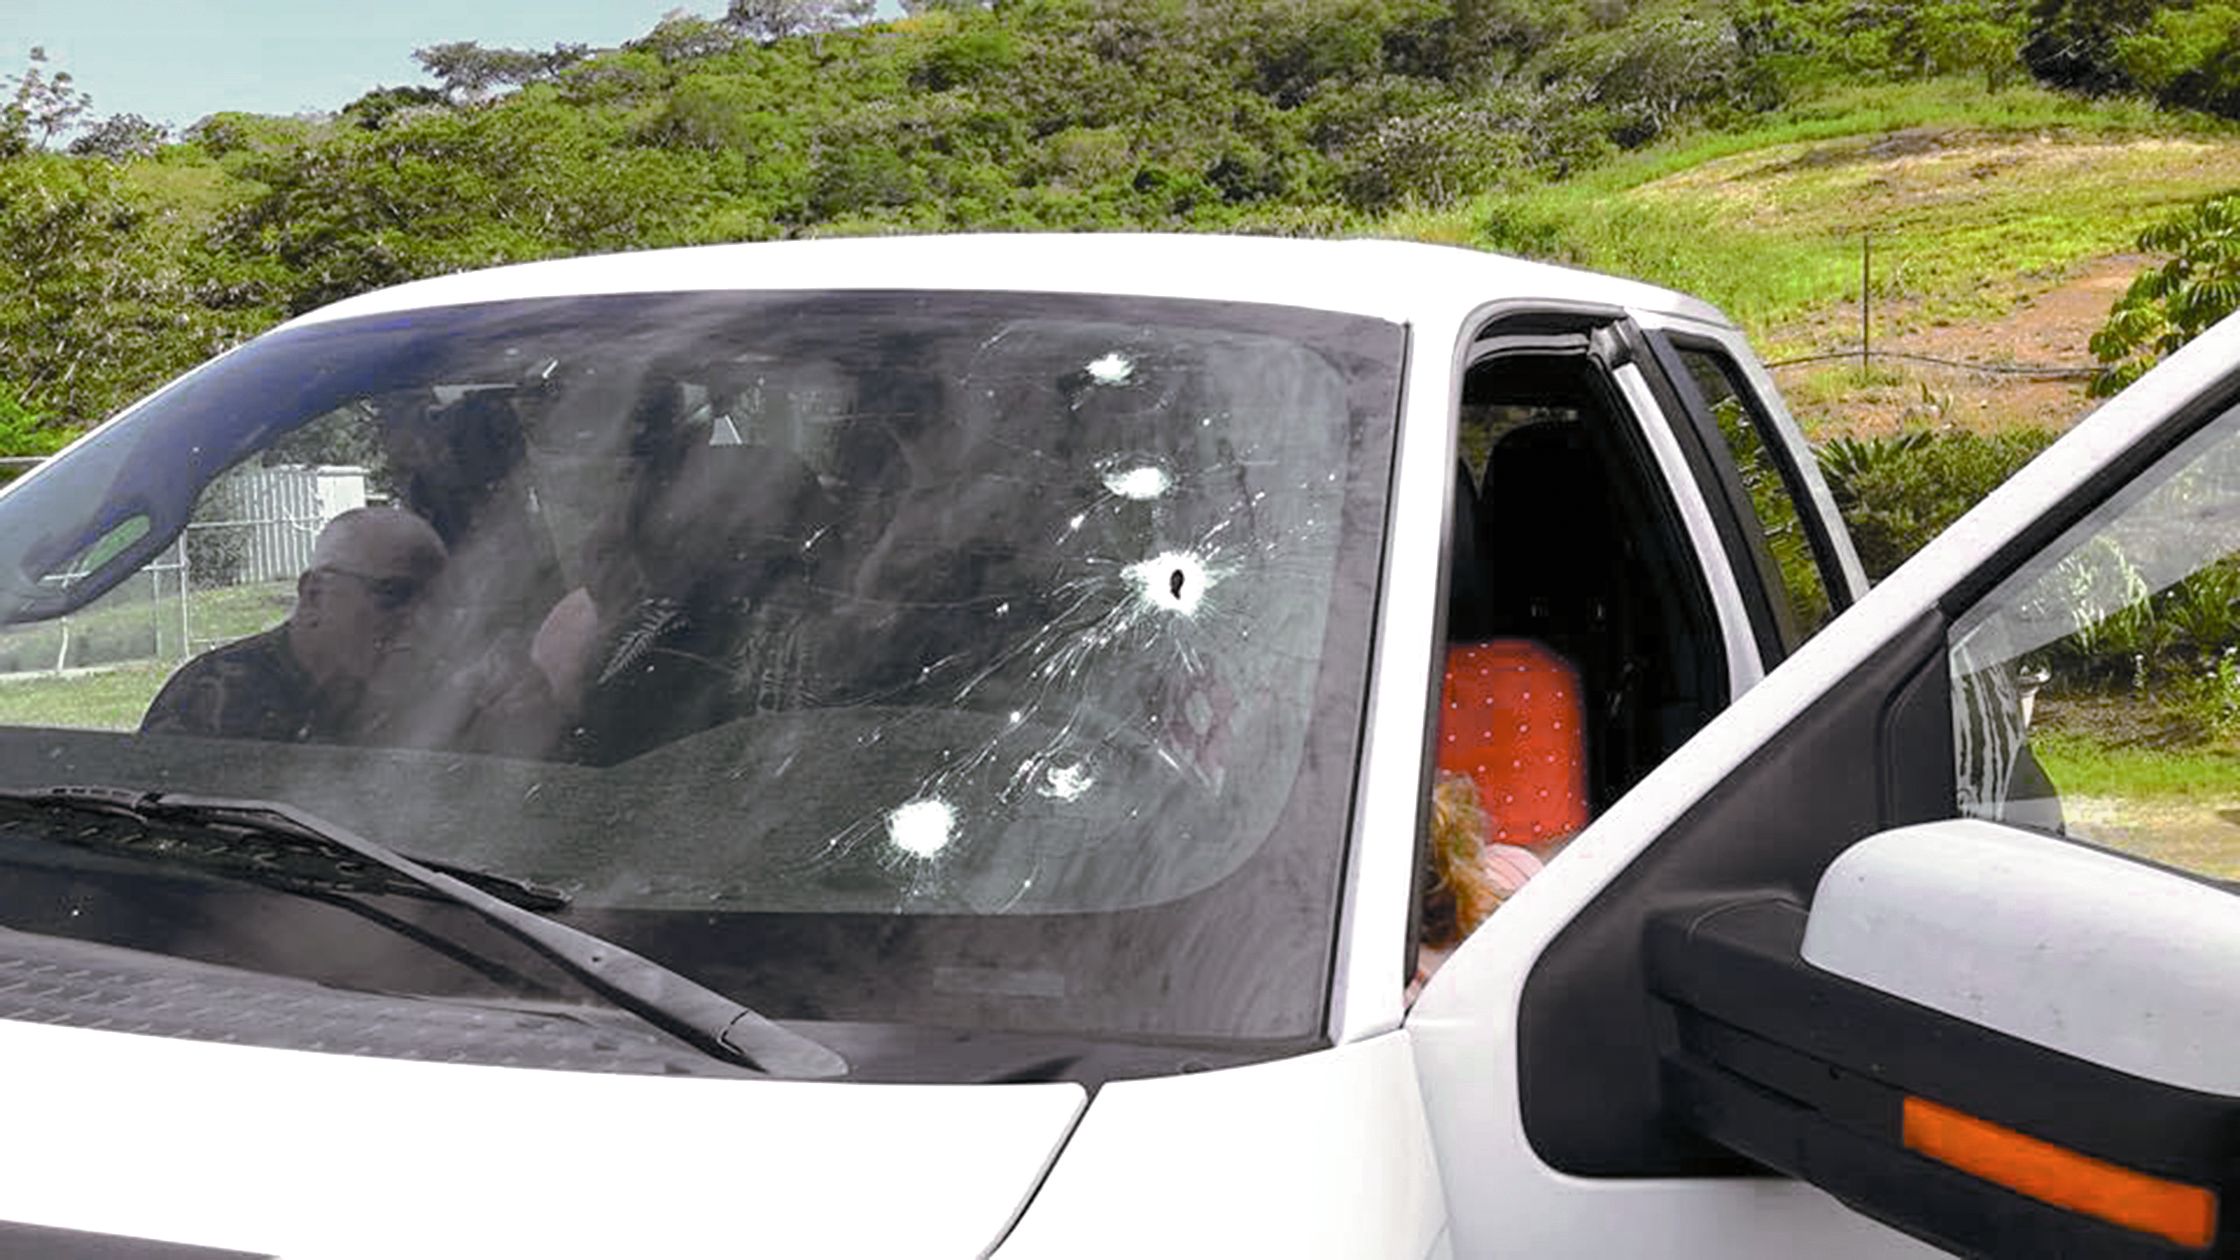 Cet automobiliste a dû faire preuve de sang-froid pour contrôler son véhicule en essuyant des tirs.